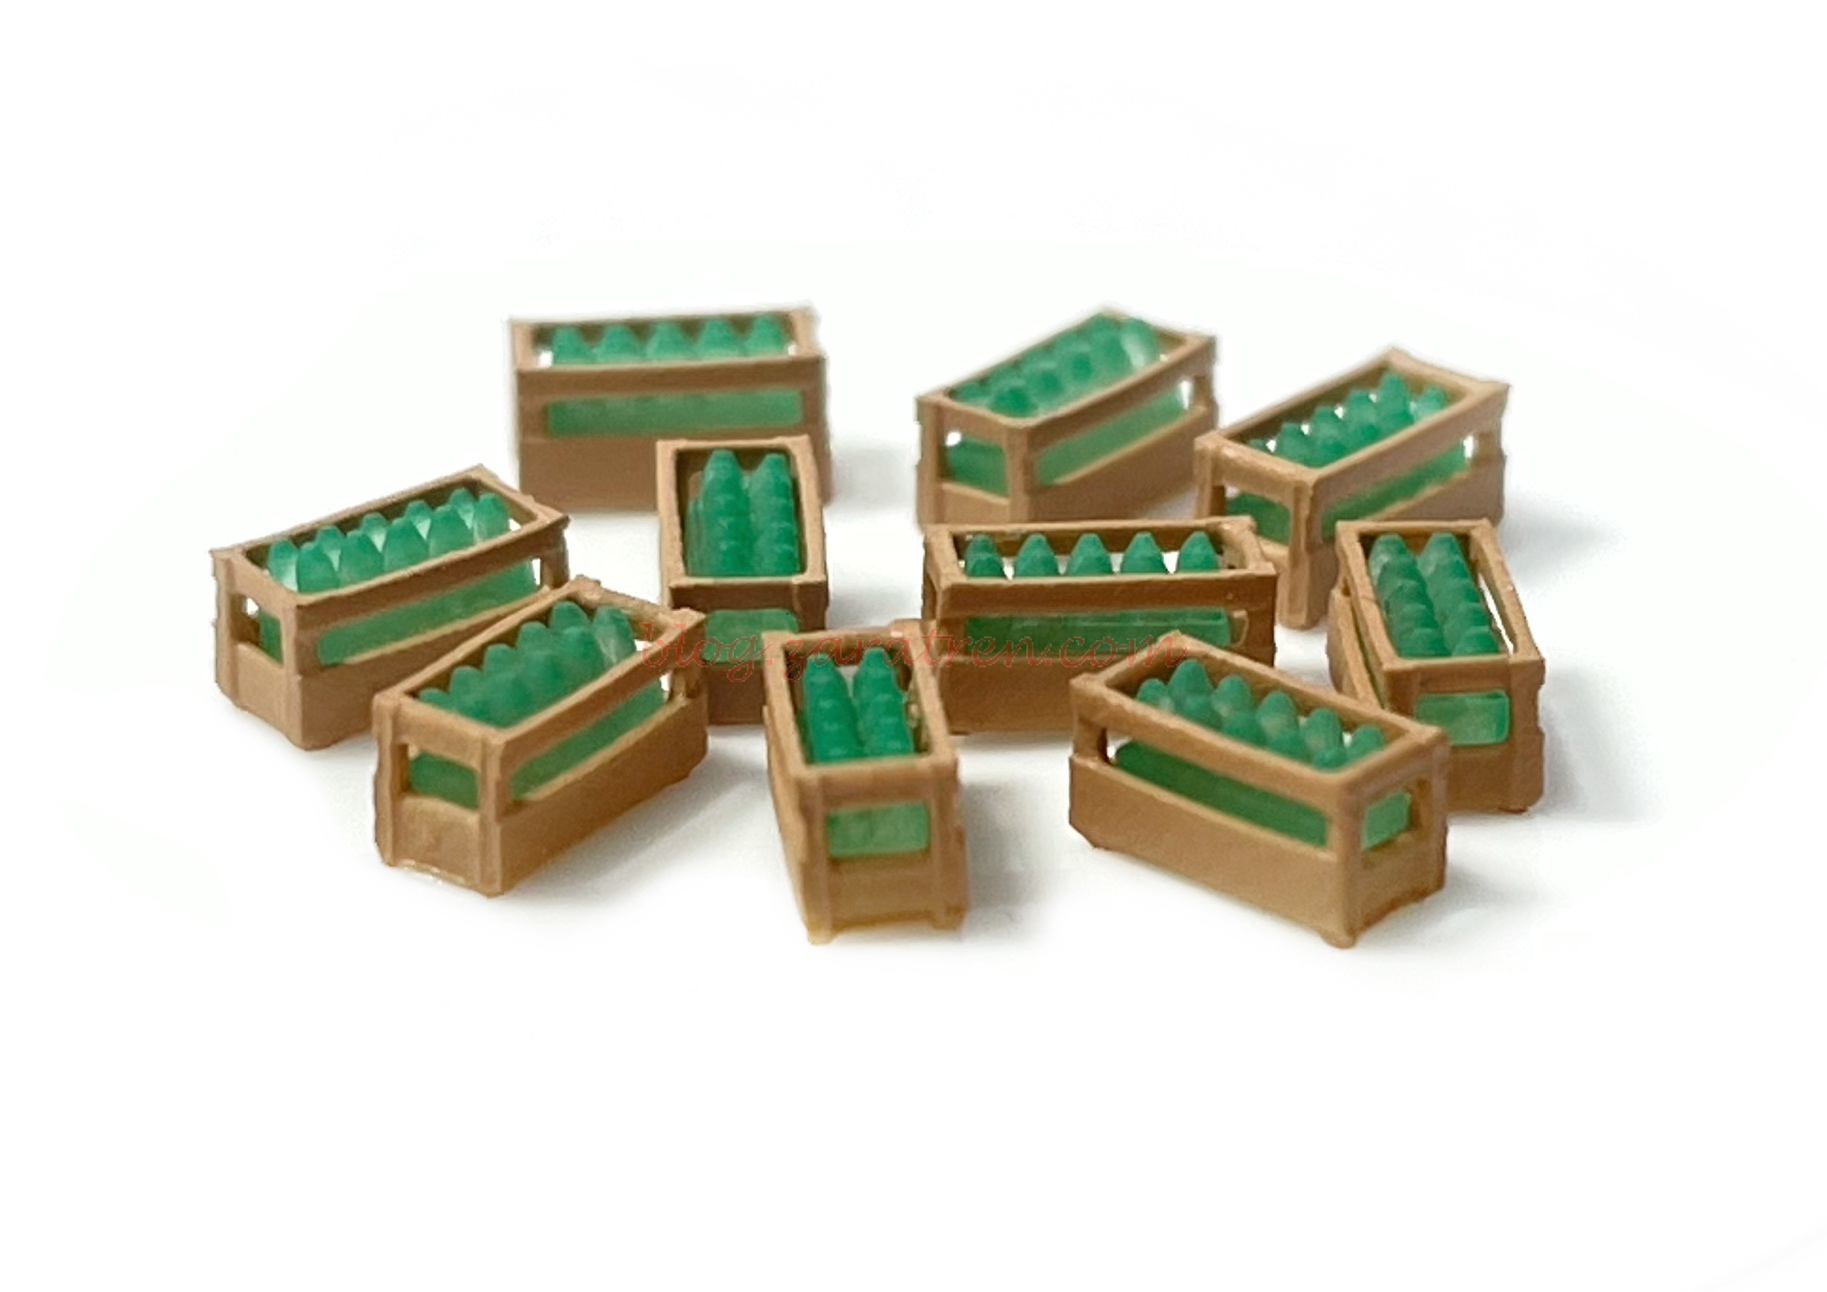 N-Train – Conjunto de 10 cajas de madera con botellas verdes, Escala N, Ref: 211049.